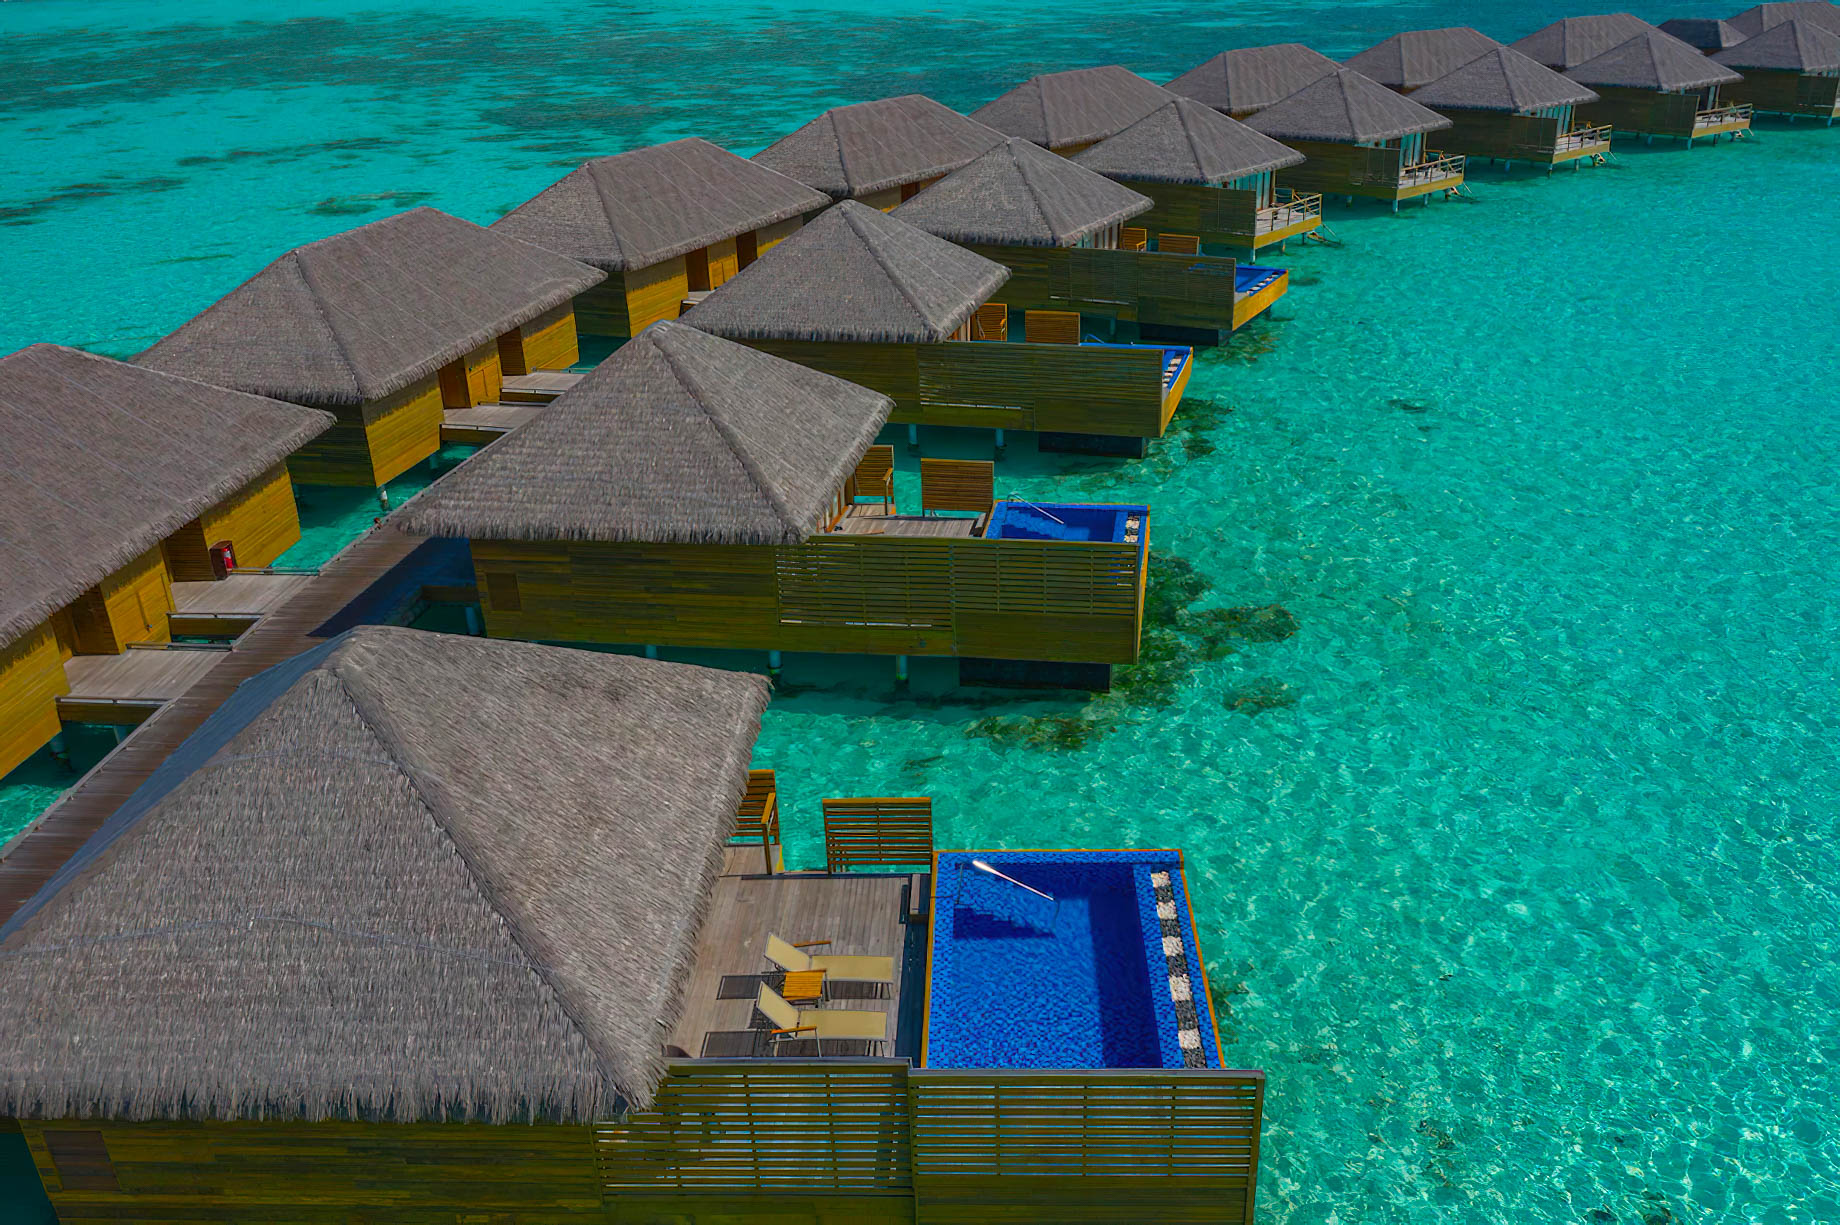 Cocoon Maldives Resort – Ookolhufinolhu, Lhaviyani Atoll, Maldives – Lagoon Overwater Suite with Pool